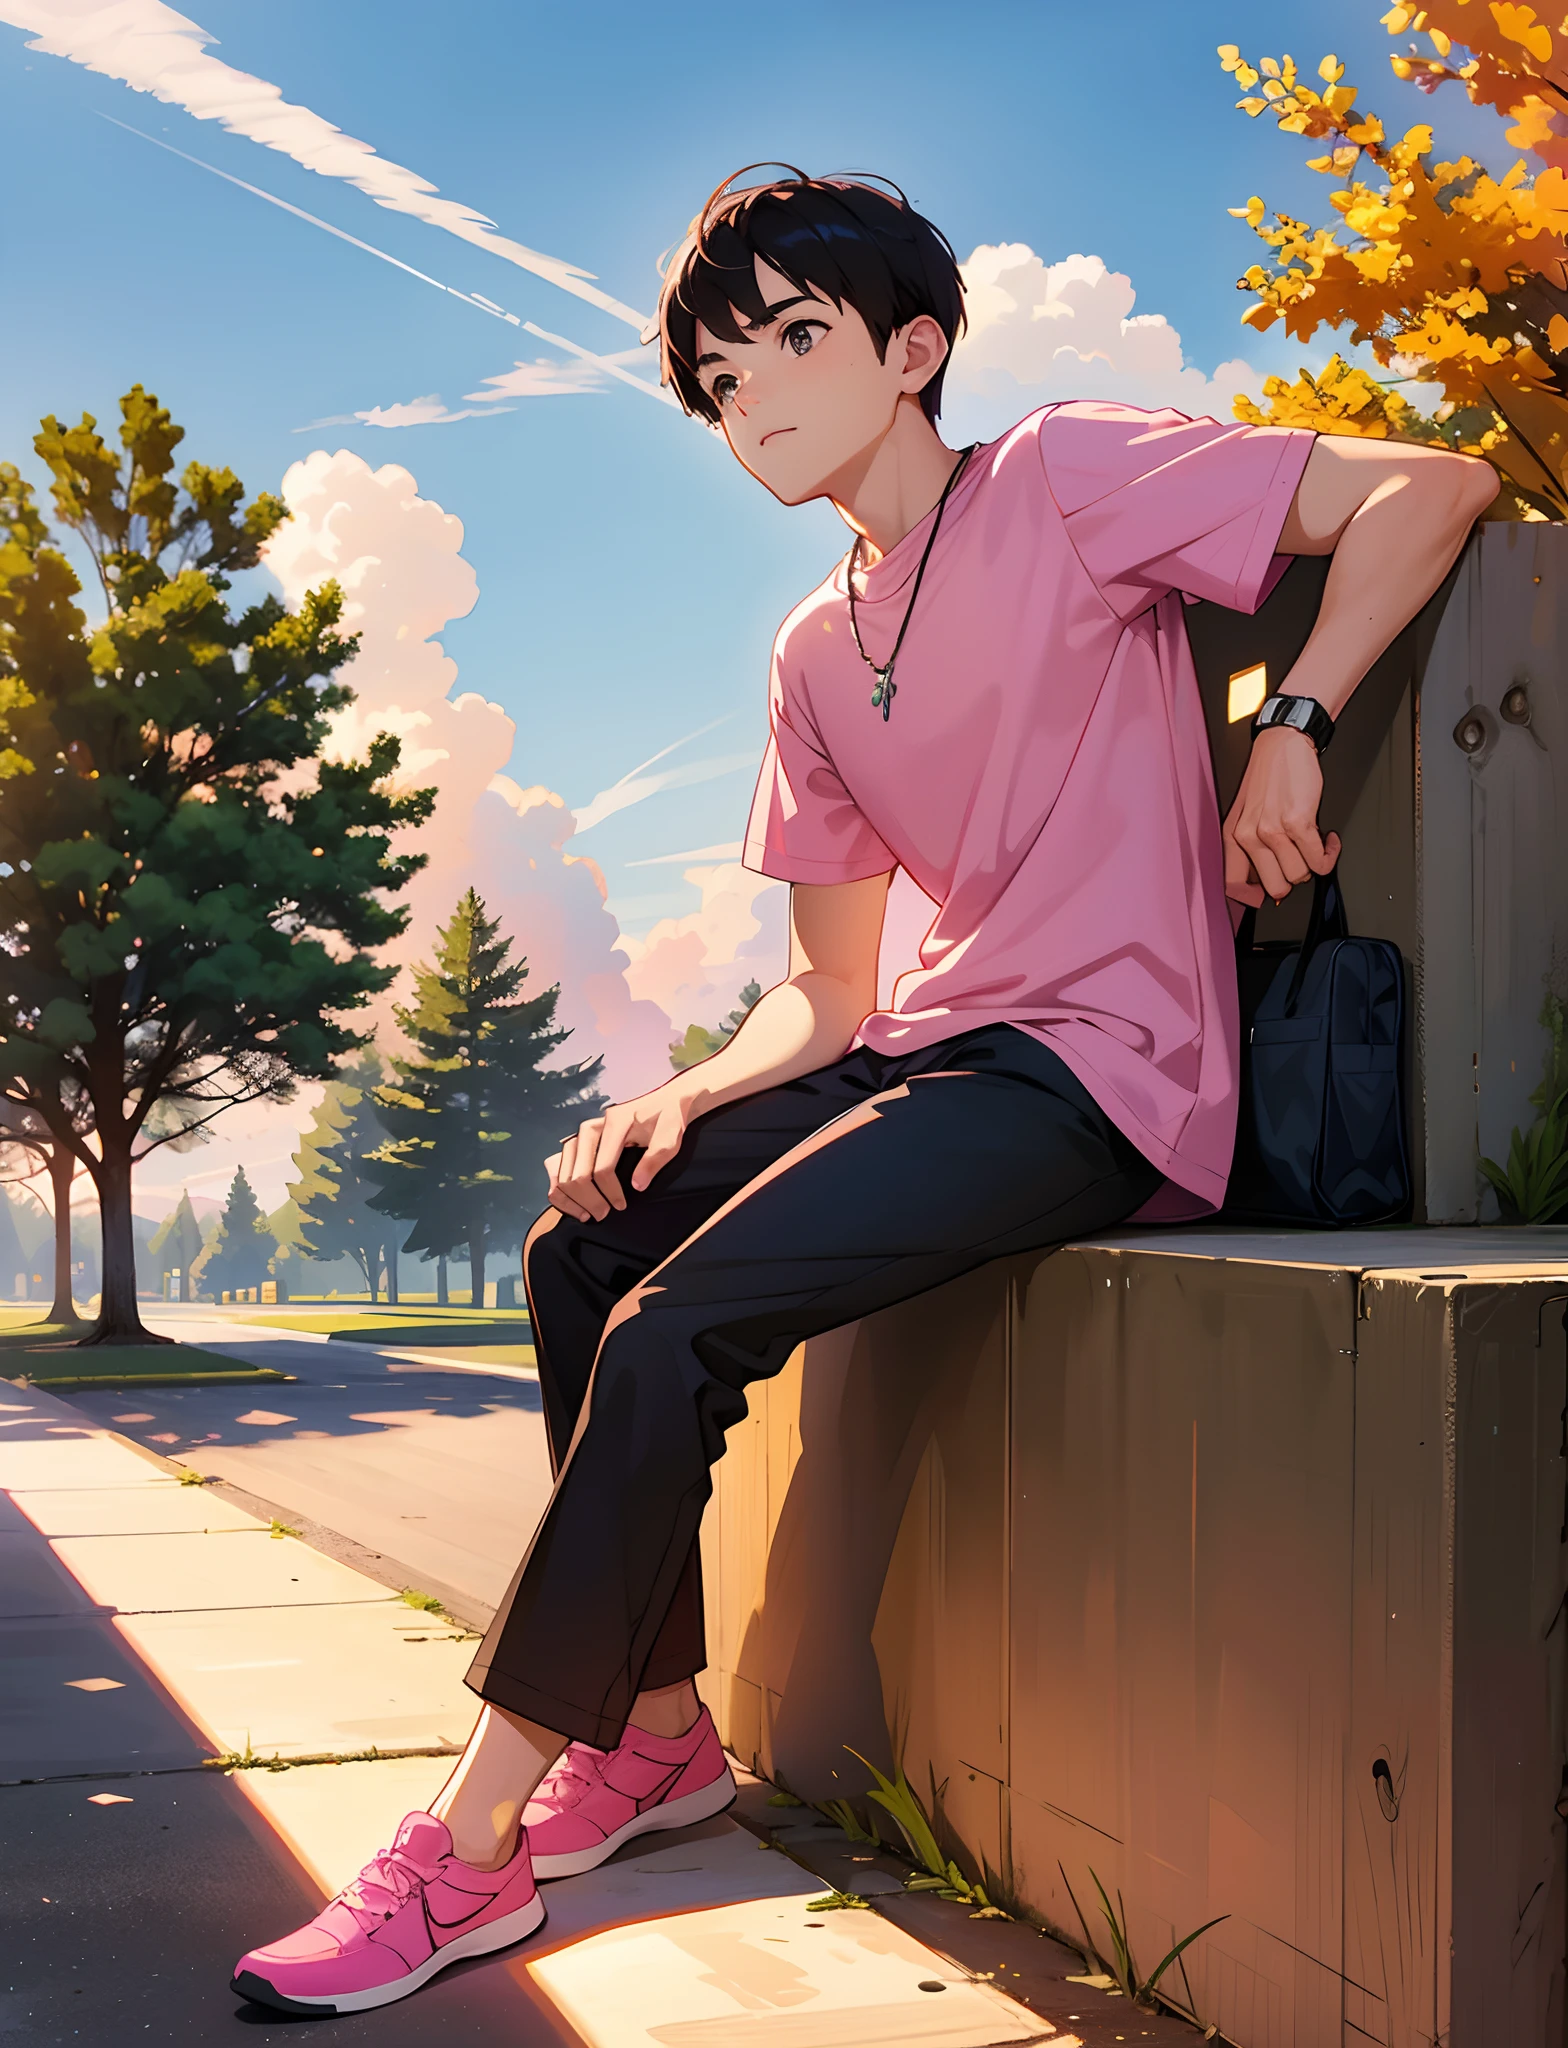 Um jovem com，vestindo uma camiseta rosa，Com um colar，sentado no parque，olhando para o céu，Grande árvore ao fundo，Pôr do sol e pôr do sol，foto de corpo inteiro，definição ultra-alta